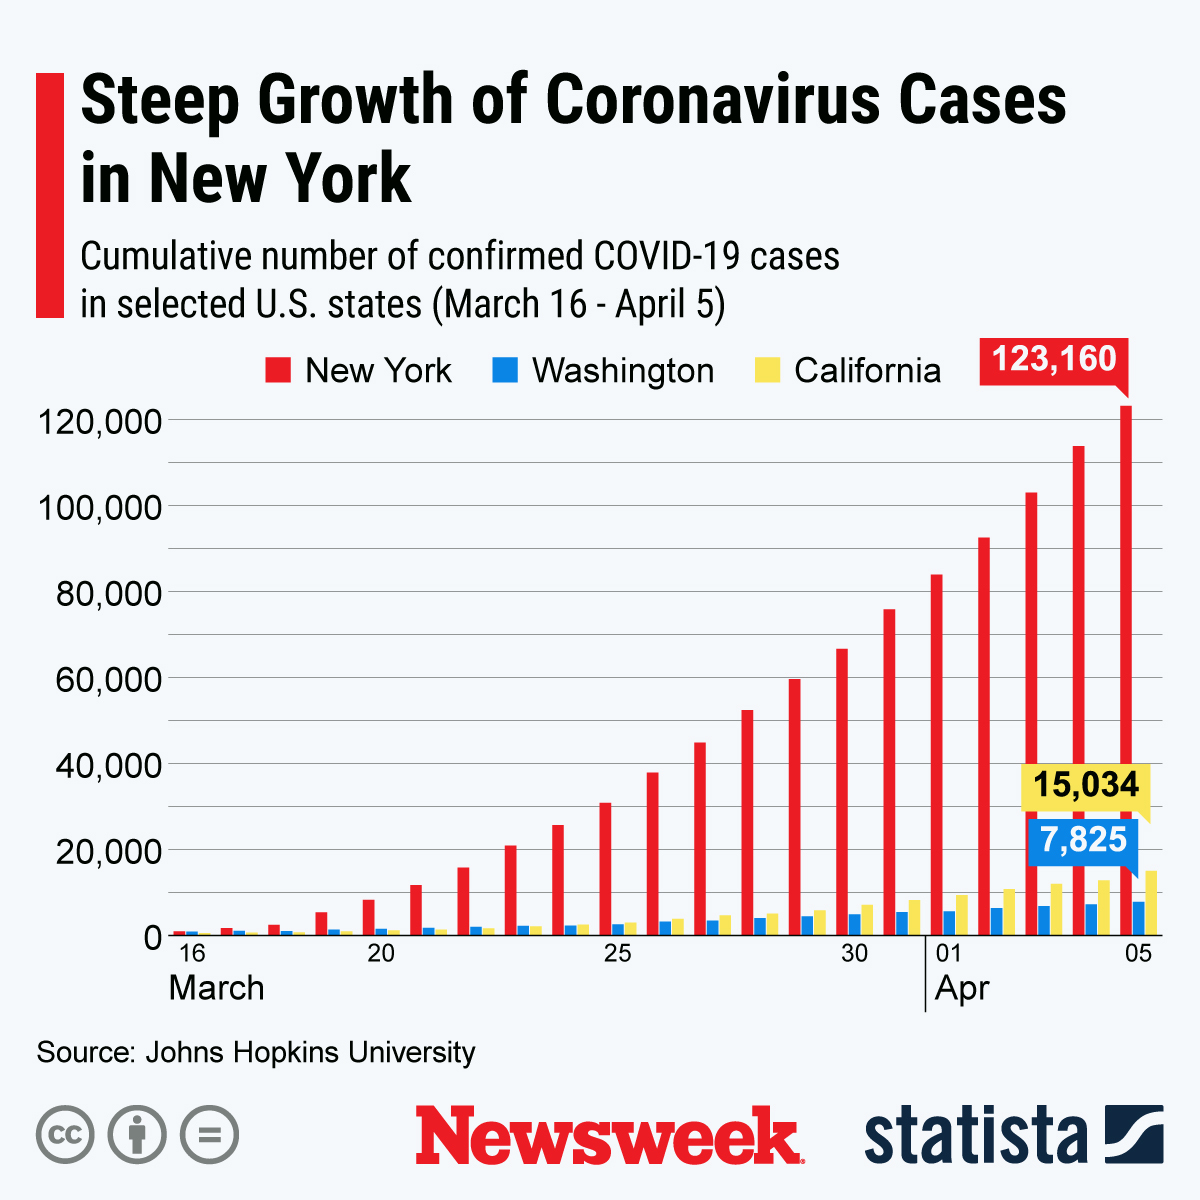 Steep Growth of Coronavirus Cases in NY